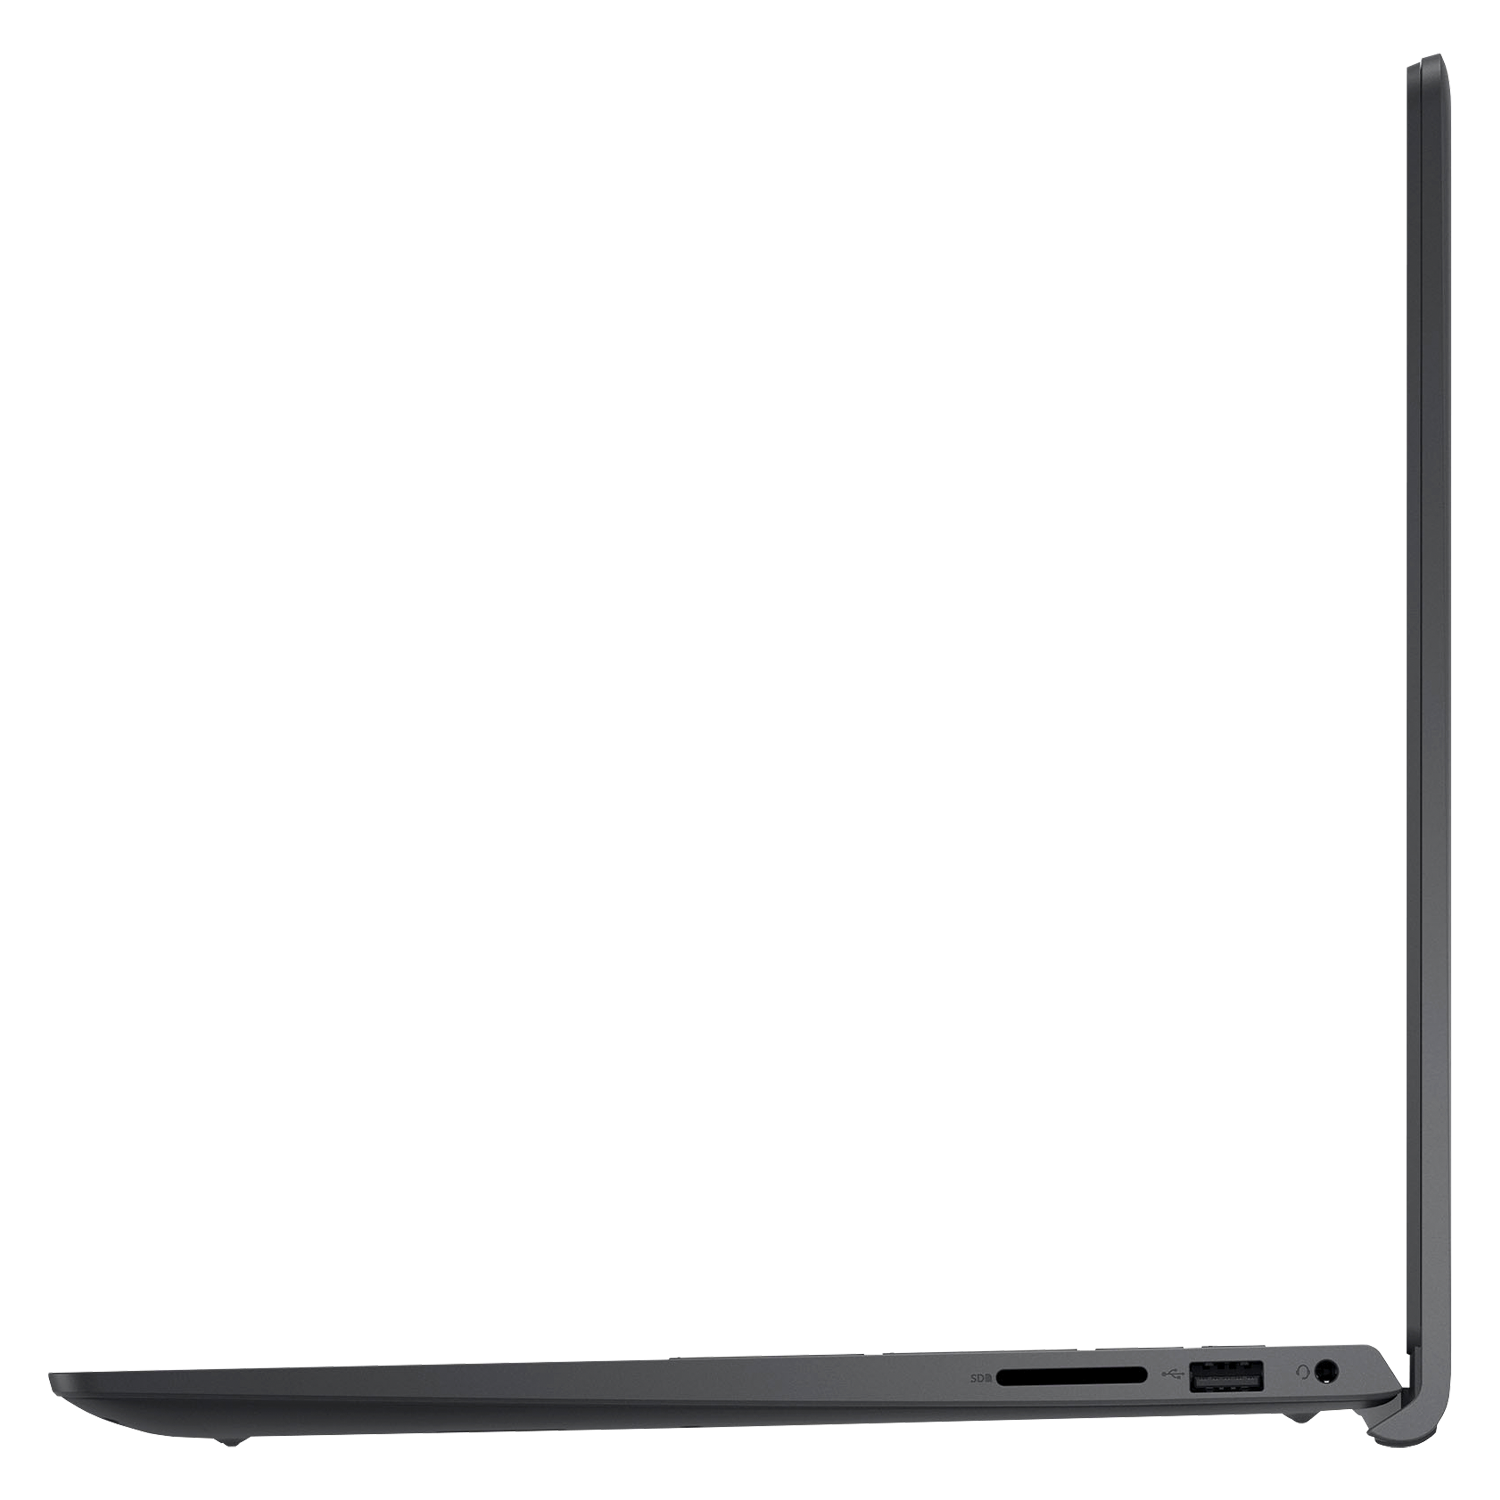 Notebook Dell I3515-A706BLK-PUS AMD Ryzen 5 8GB / 256GB SSD / Tela 15.6'' - Preto